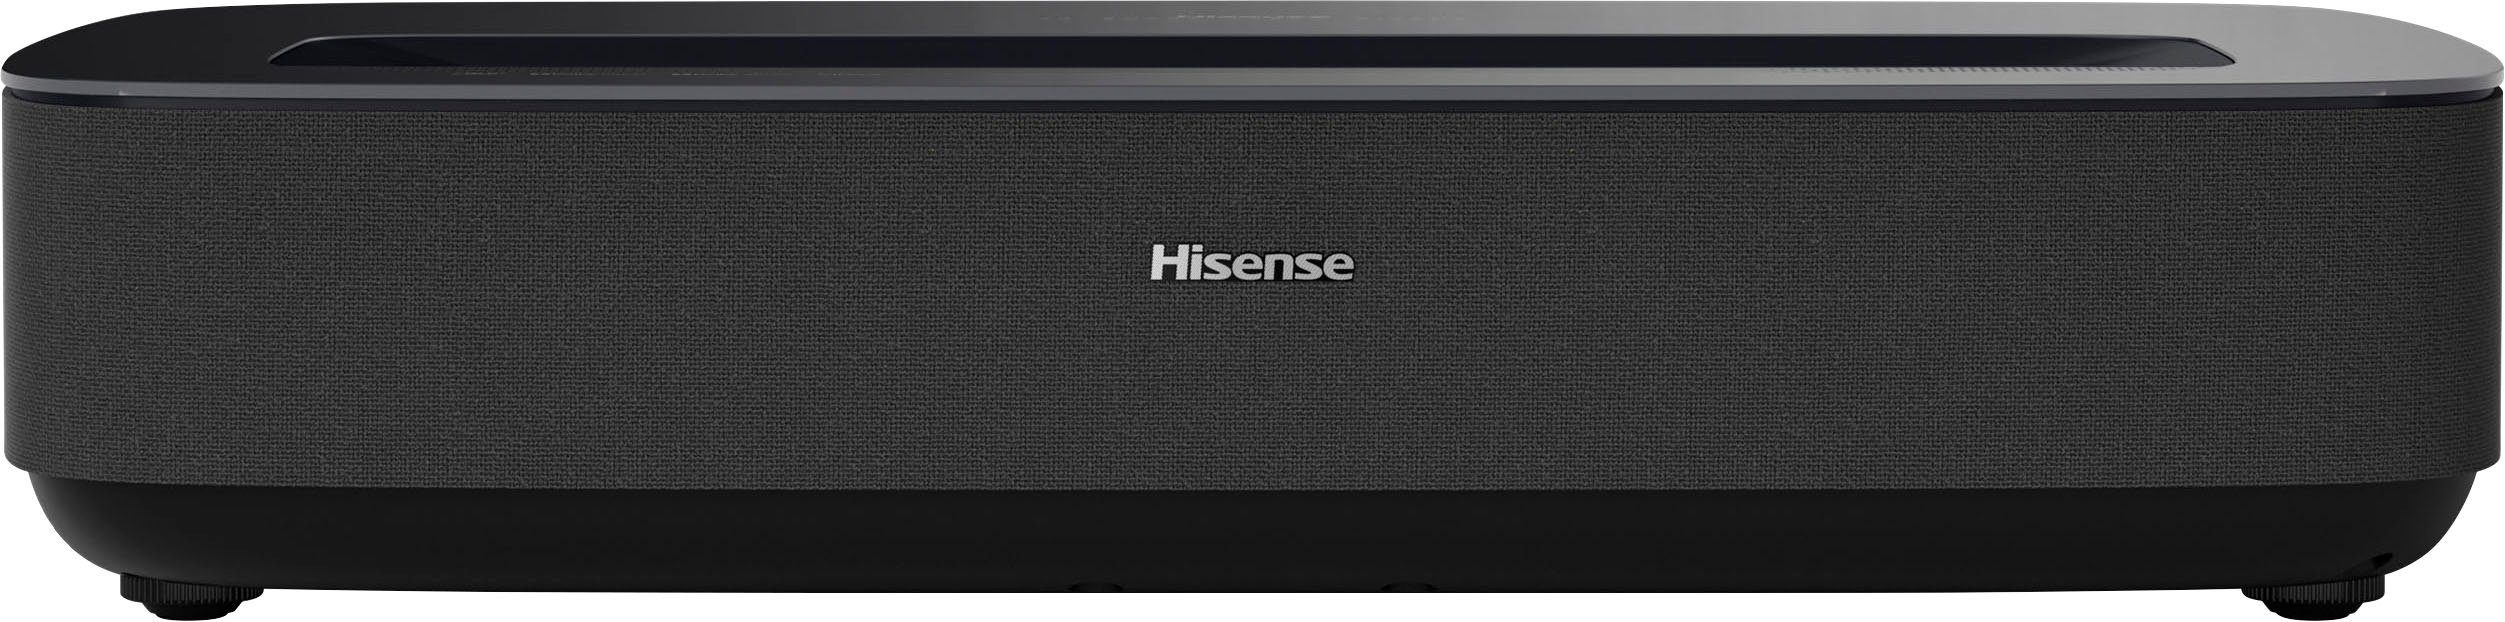 Hisense PL1SE Beamer (2100 px) x 2160 3840 lm